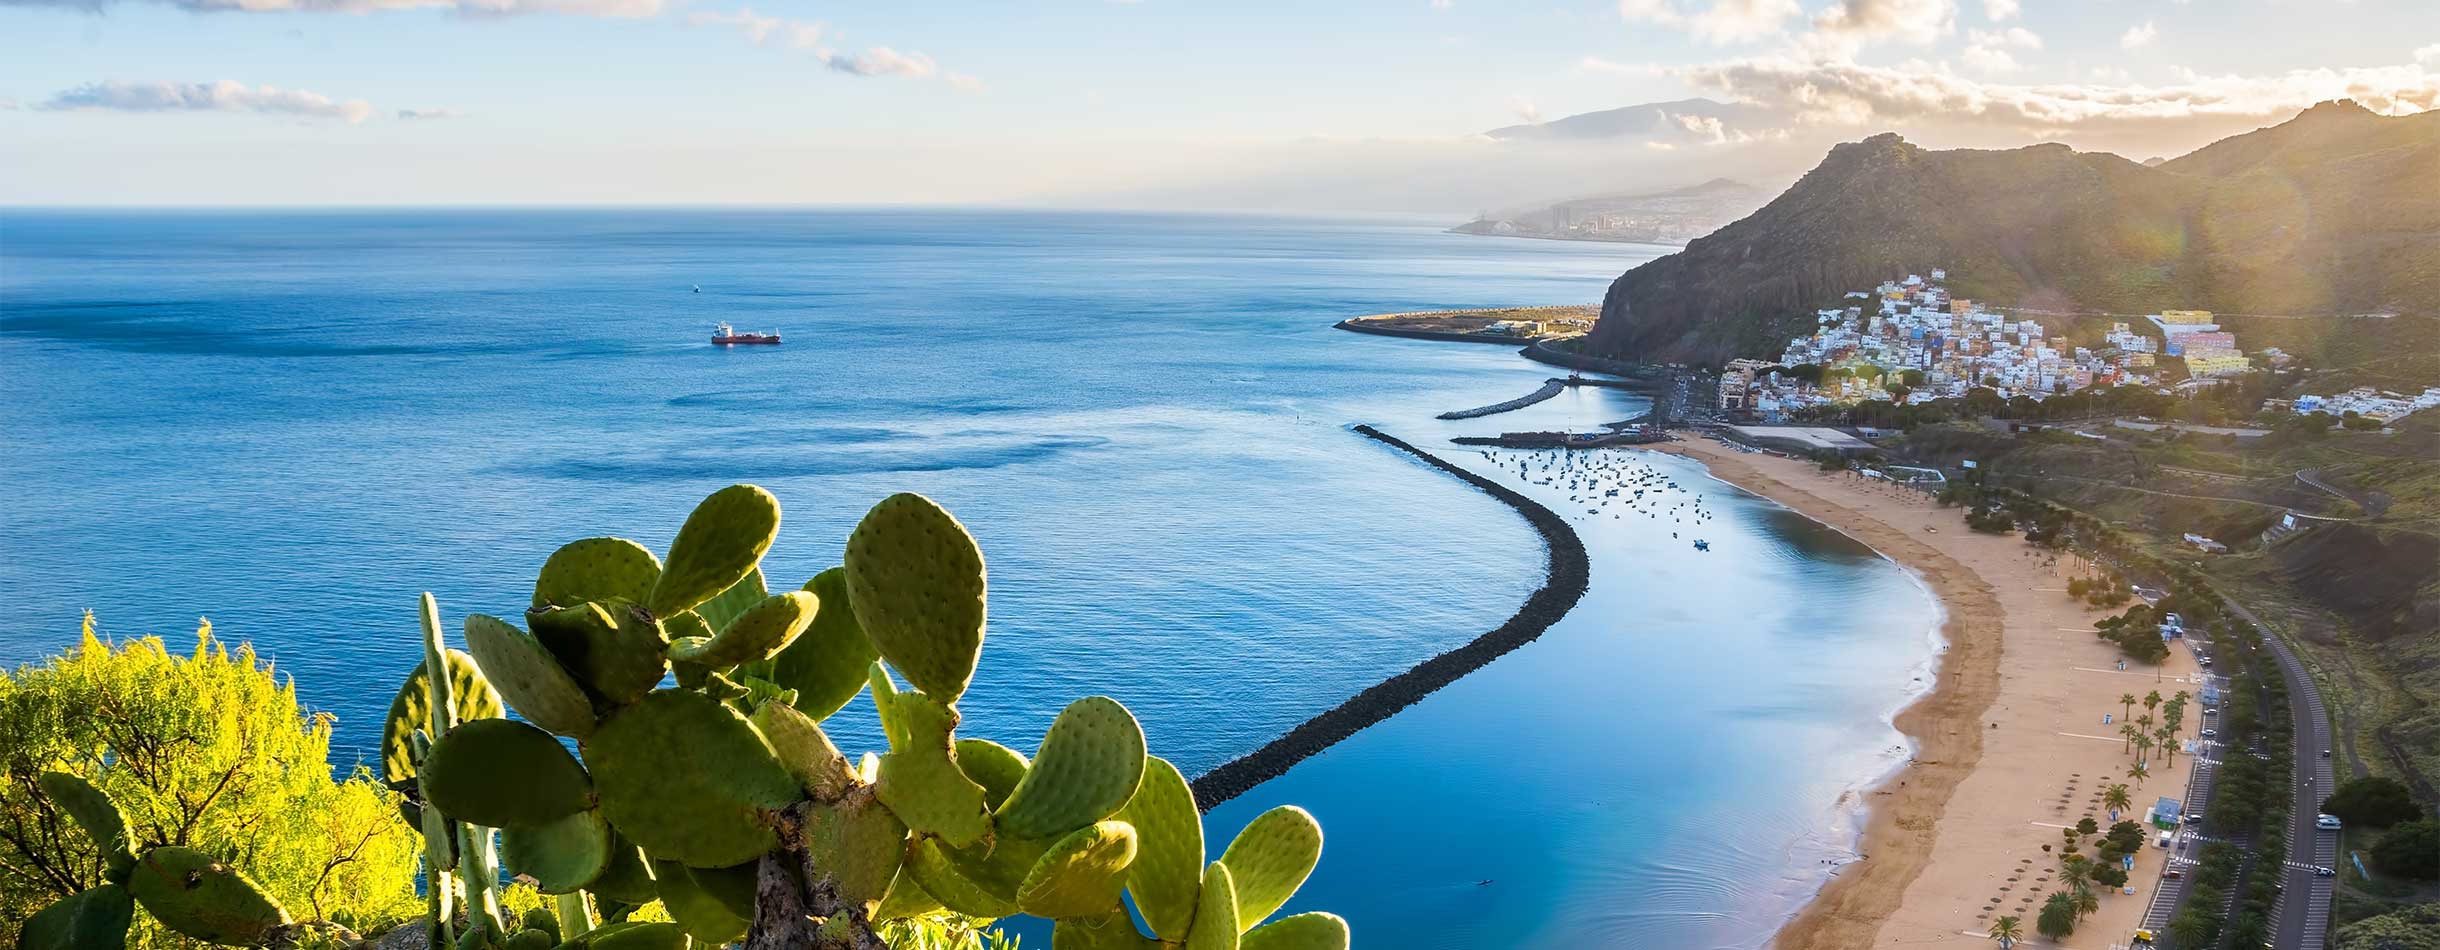 Las Teresitas beach, Tenerife